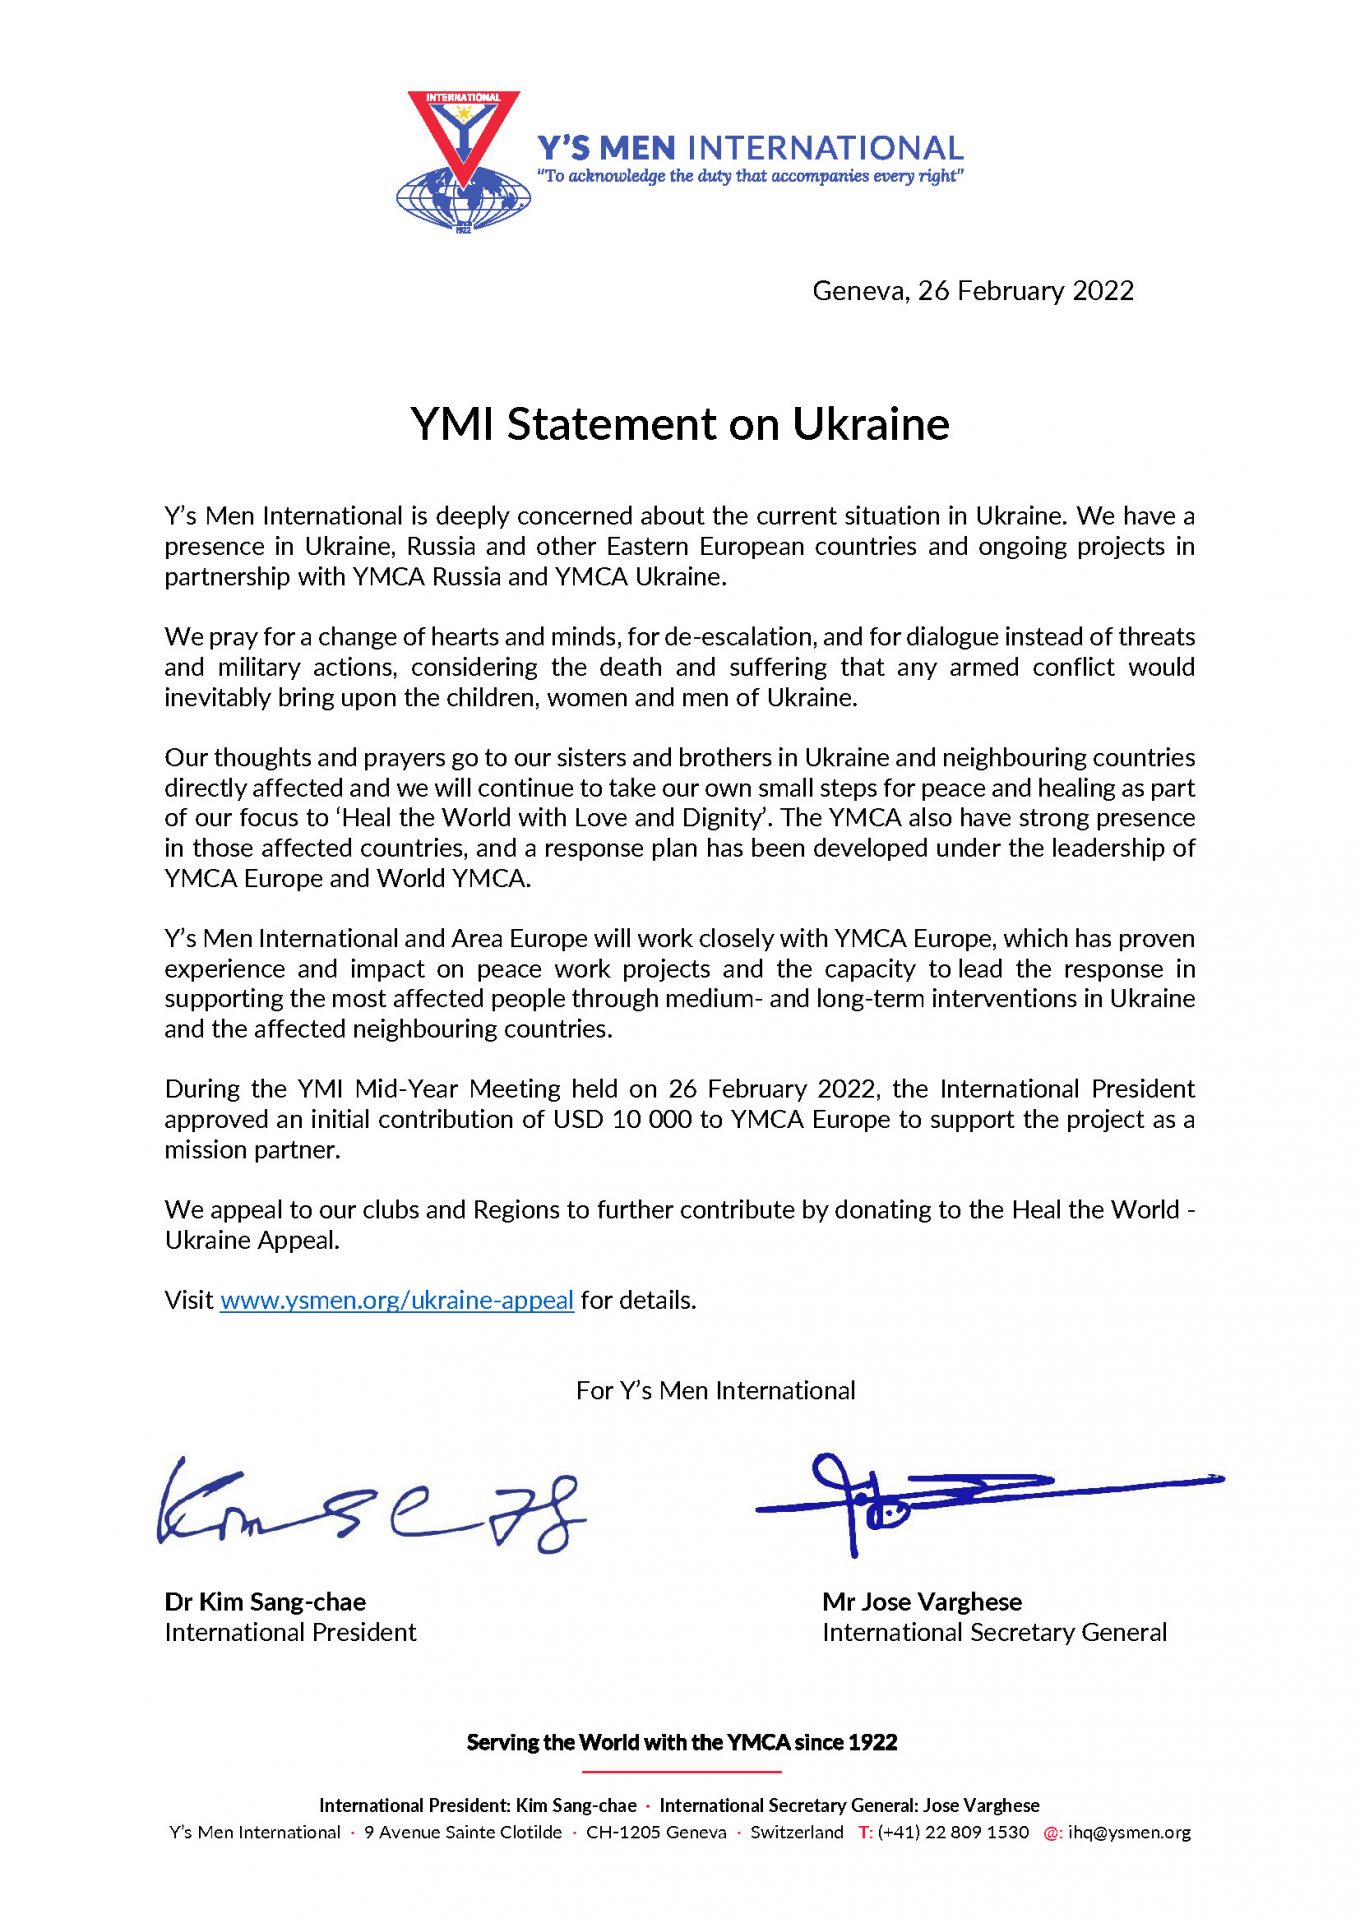 YMI Statement on Ukraine